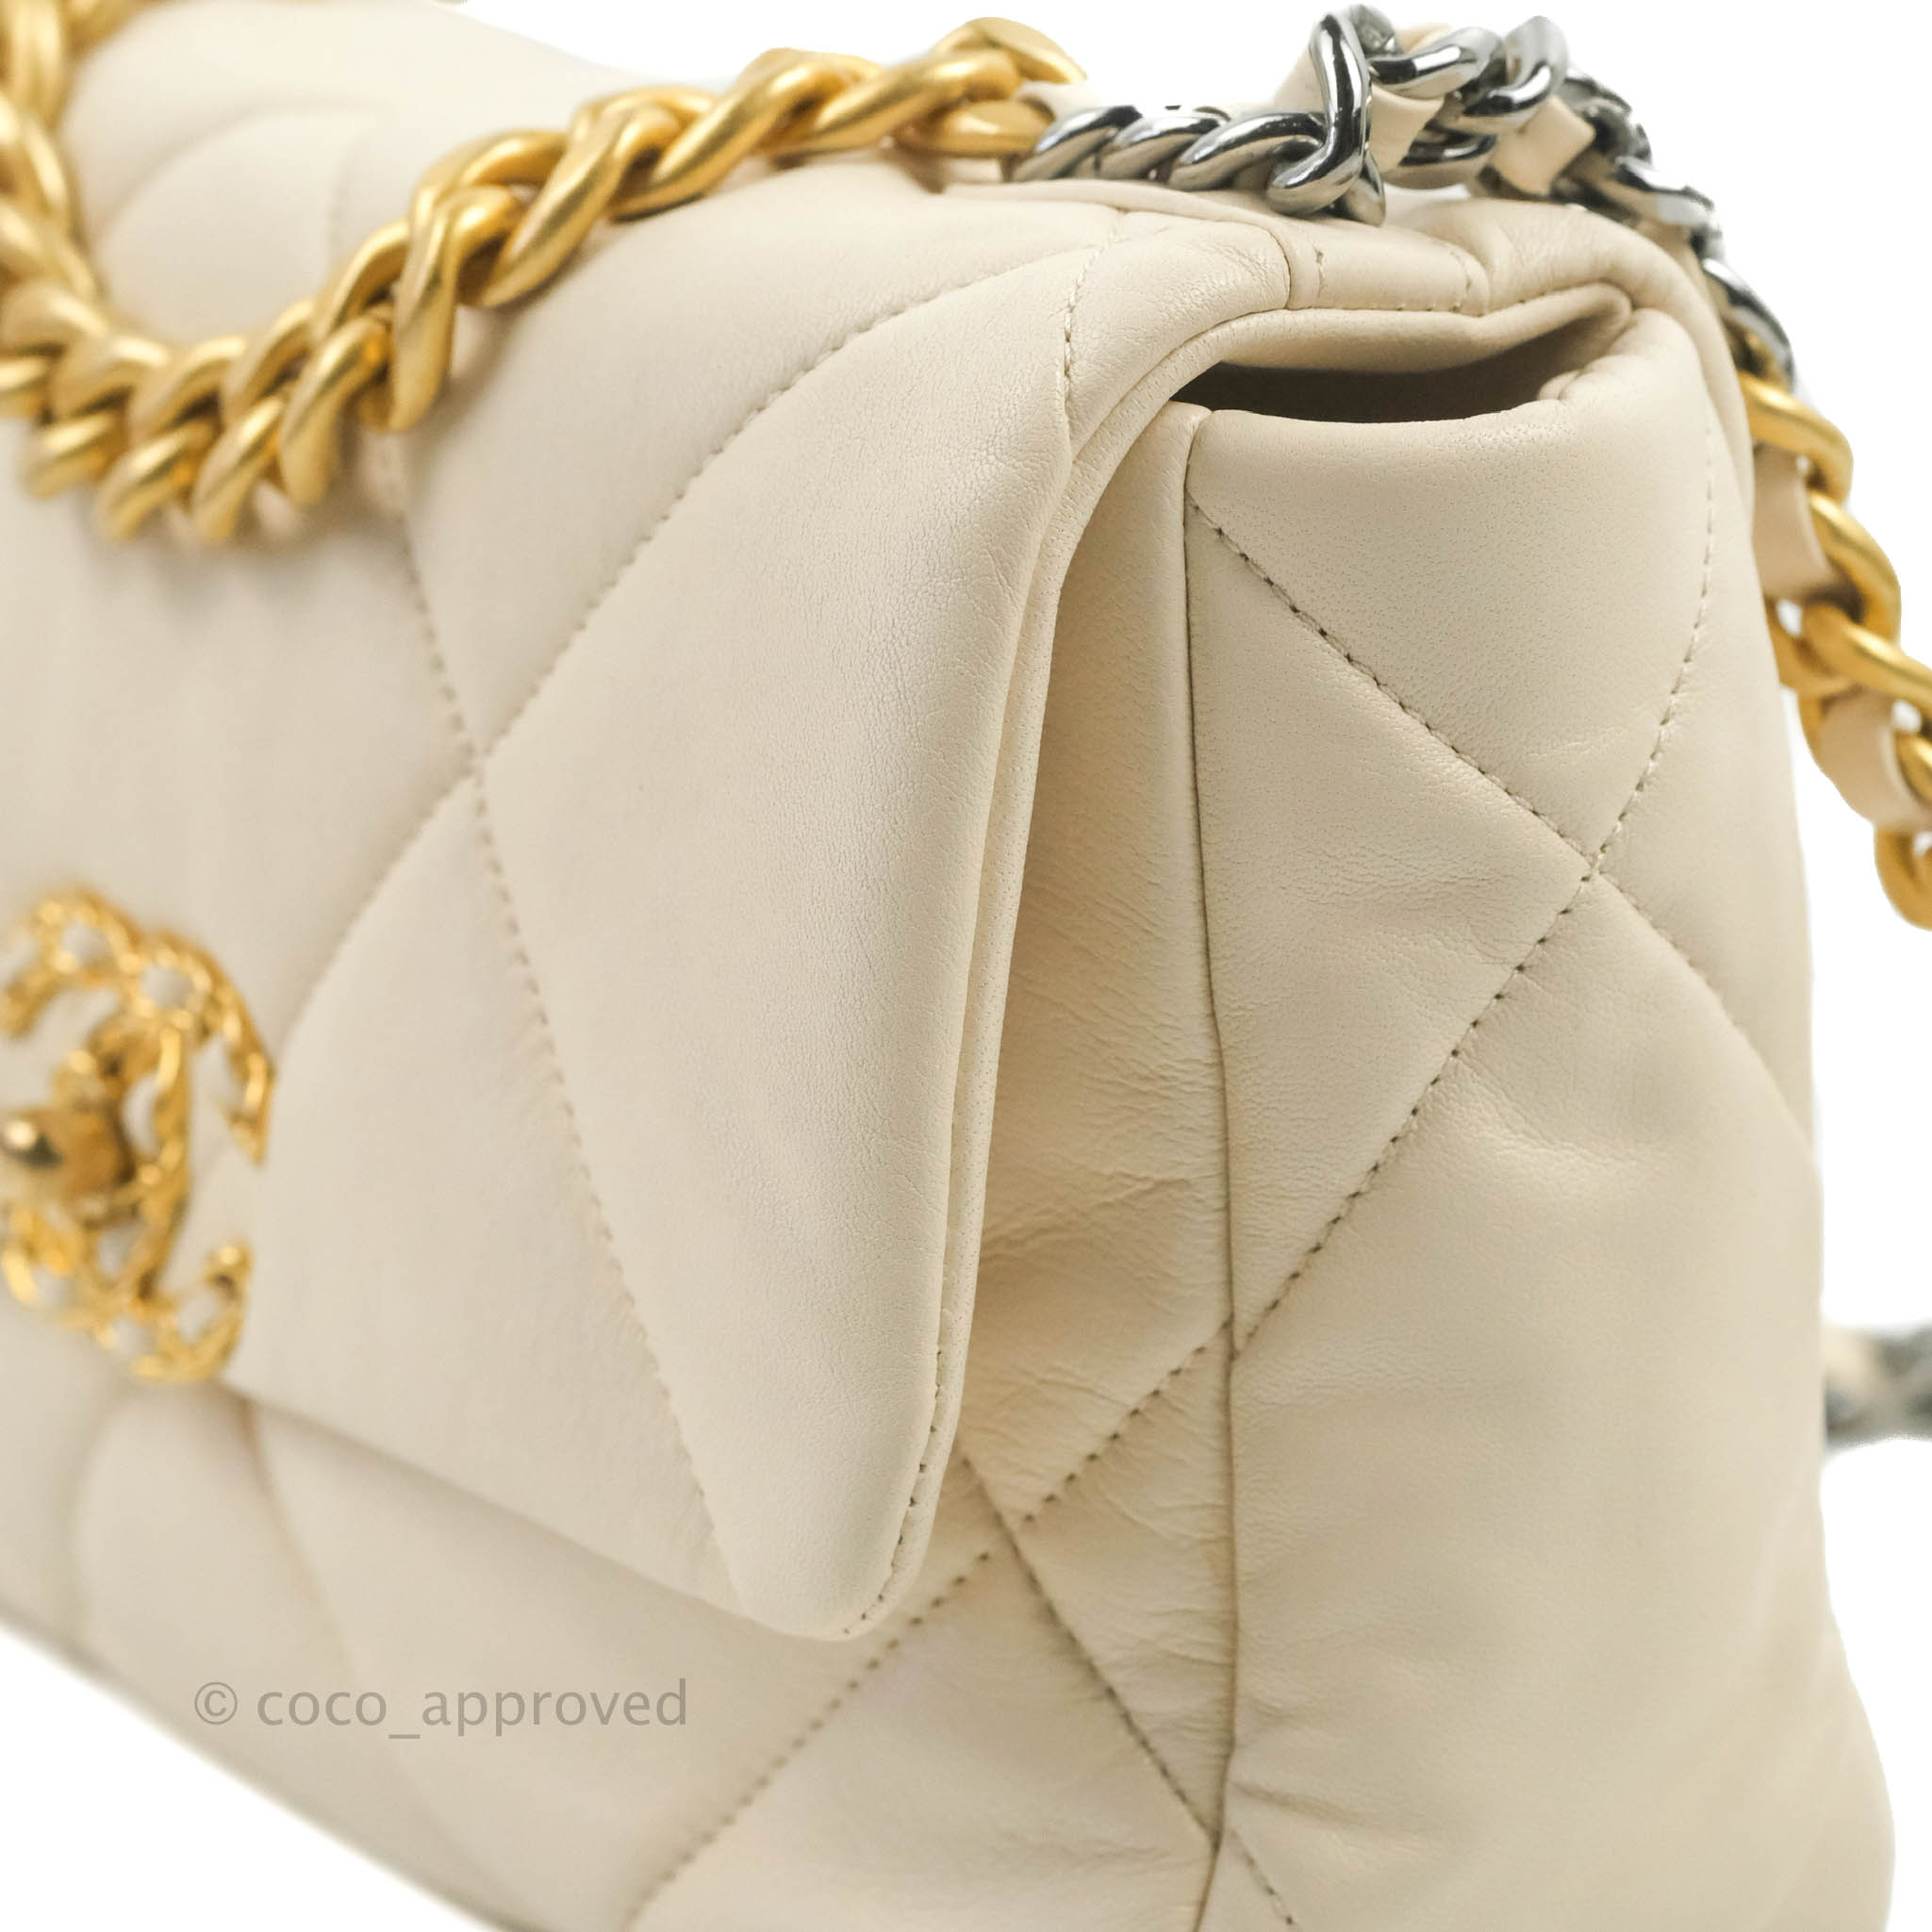 Chanel Medium 19 Flap Bag W/Tags